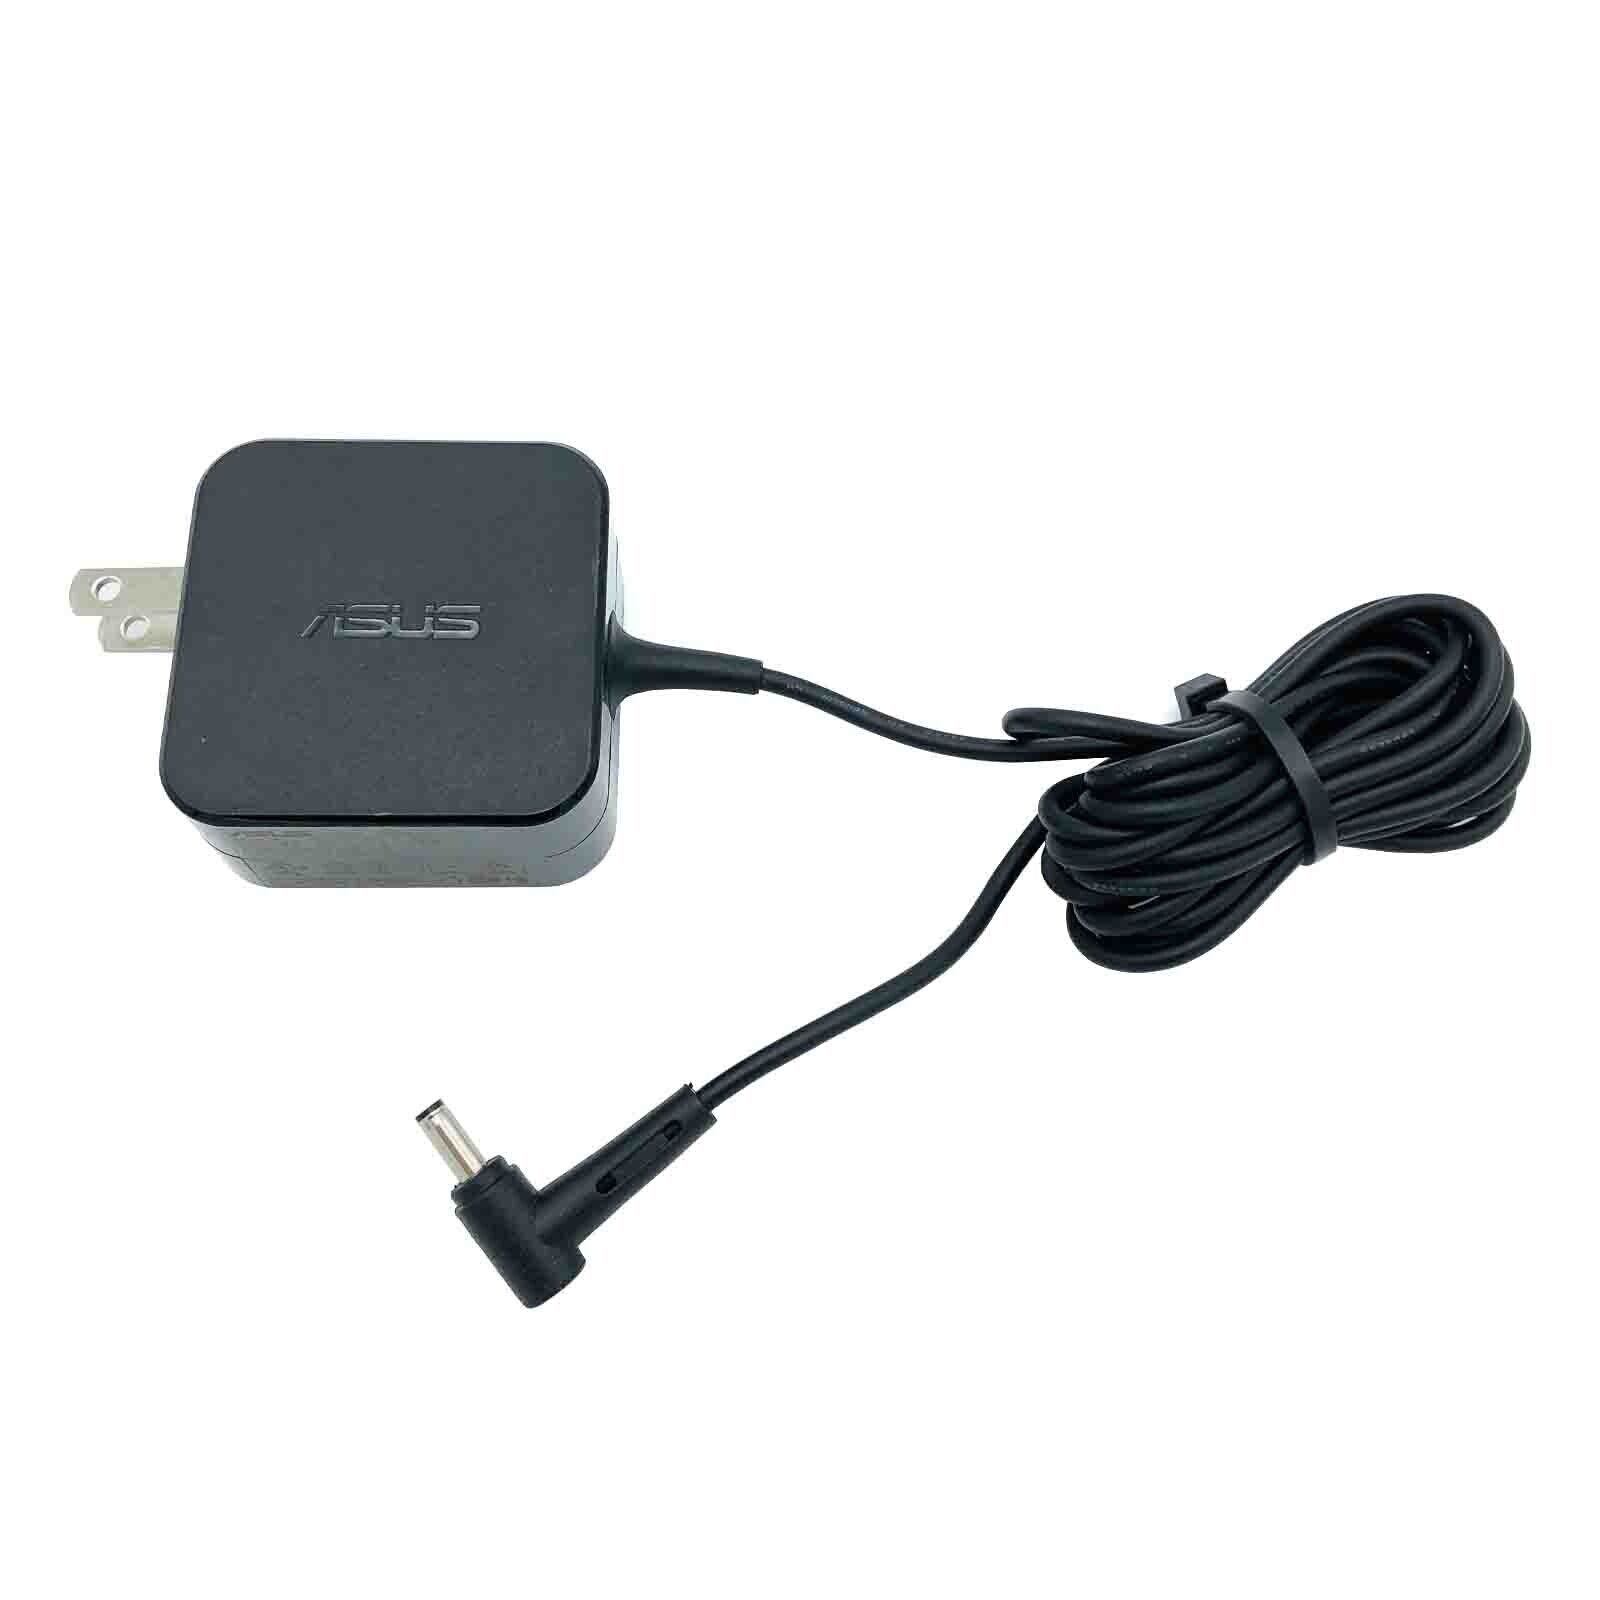 Original ASUS AC Power Adapter for ASUS RT-AC86U Gigabit Gaming Router